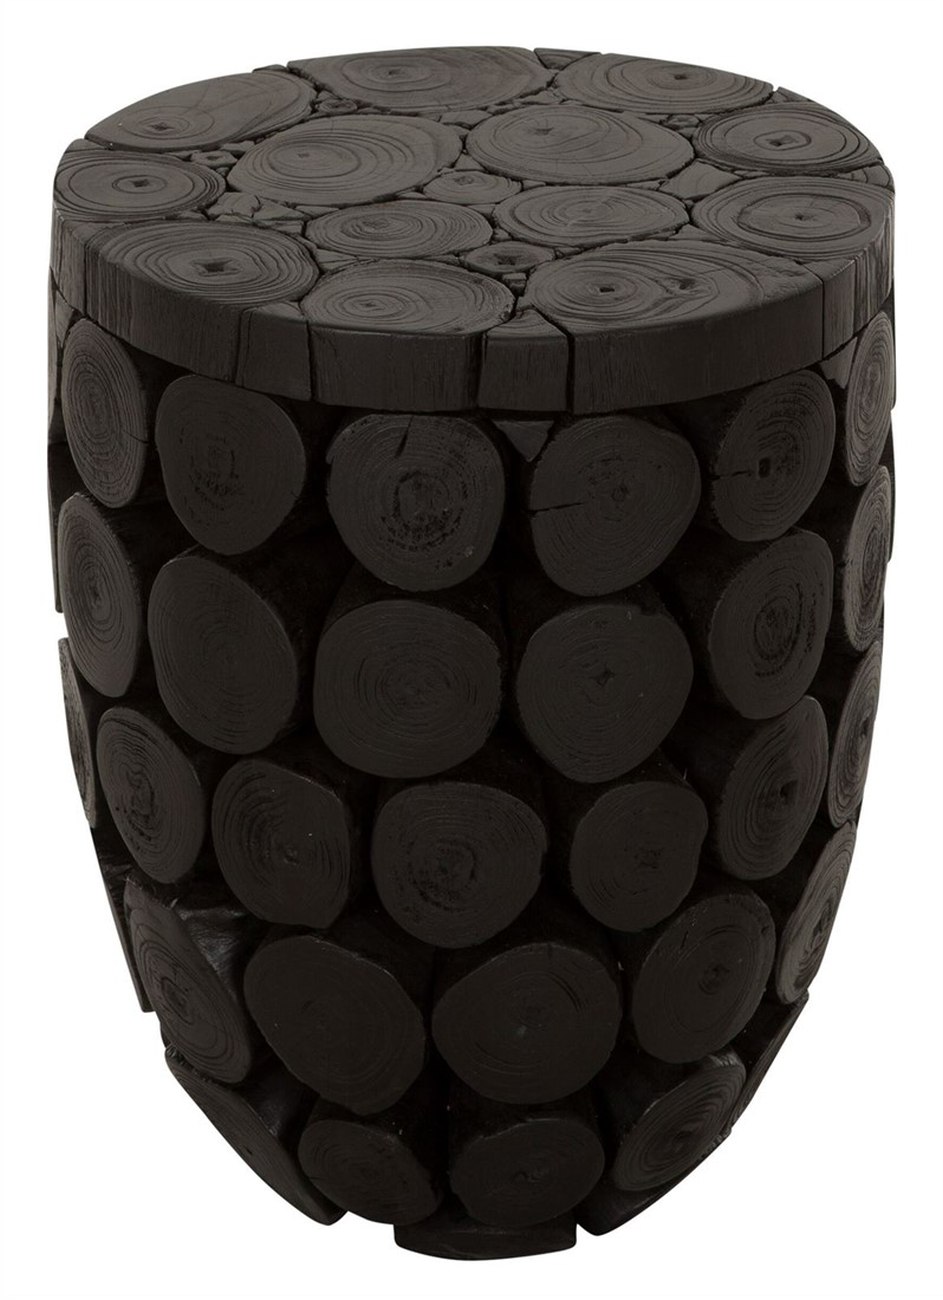 Der Couchtisch Cone überzeugt mit seinem modernen Design. Gefertigt wurde es aus recyceltem Teakholz, welches einen schwarzen Farbton besitzt. Der Couchtisch besitzt einen Durchmesser von 36 cm.